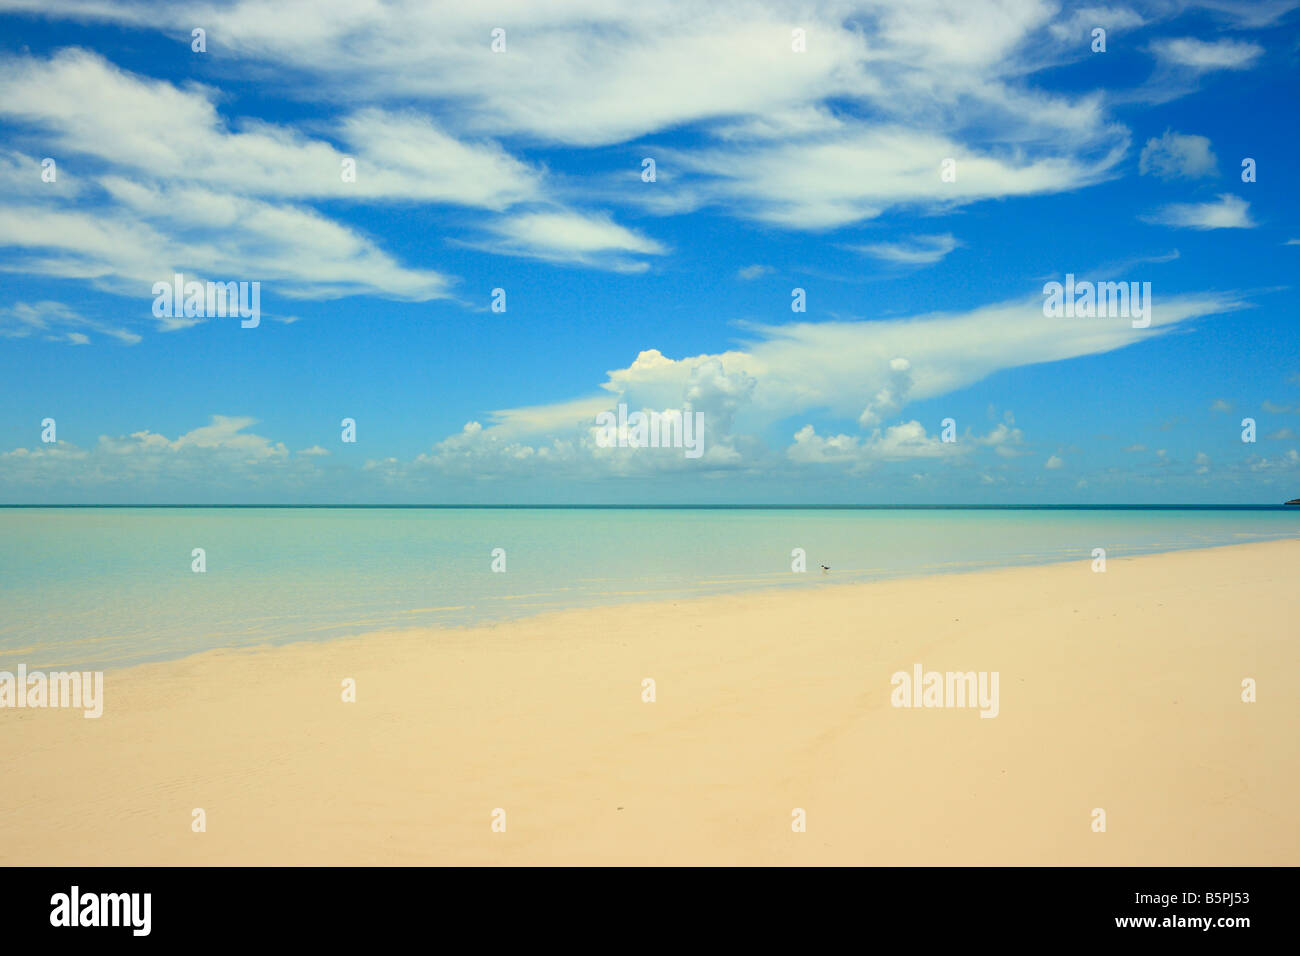 An empty beach on an island of the Exuma Keys in the Bahamas Stock Photo